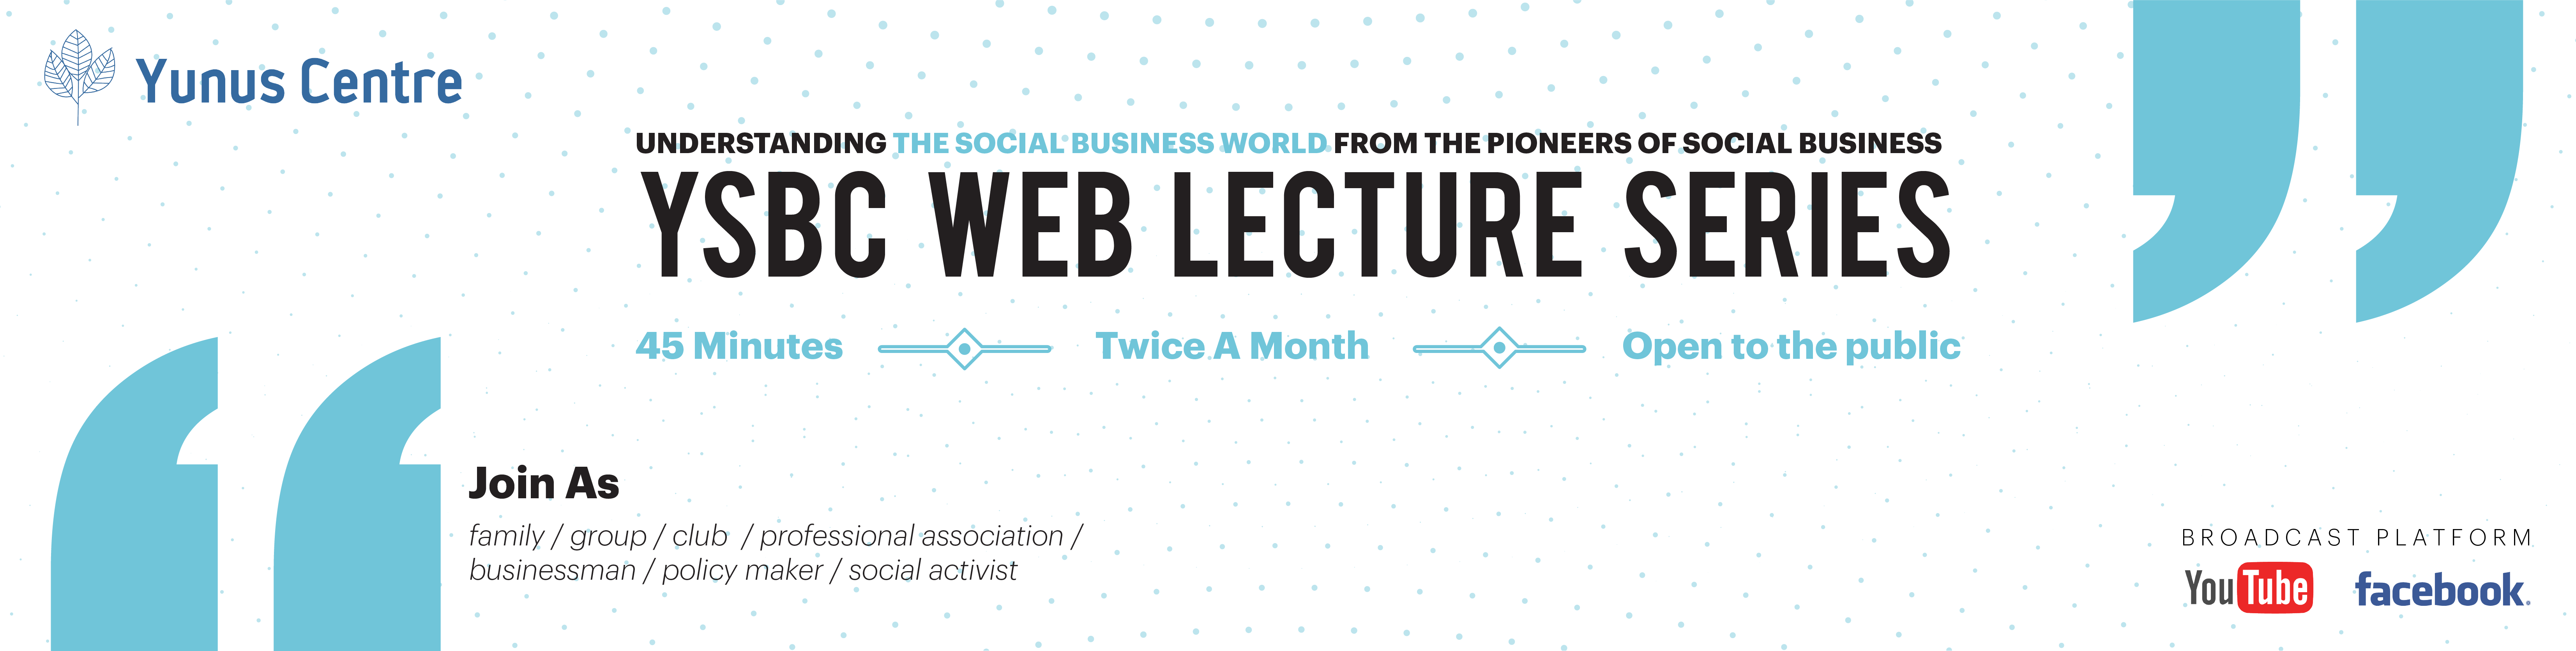 YSBC Web Lecture Series